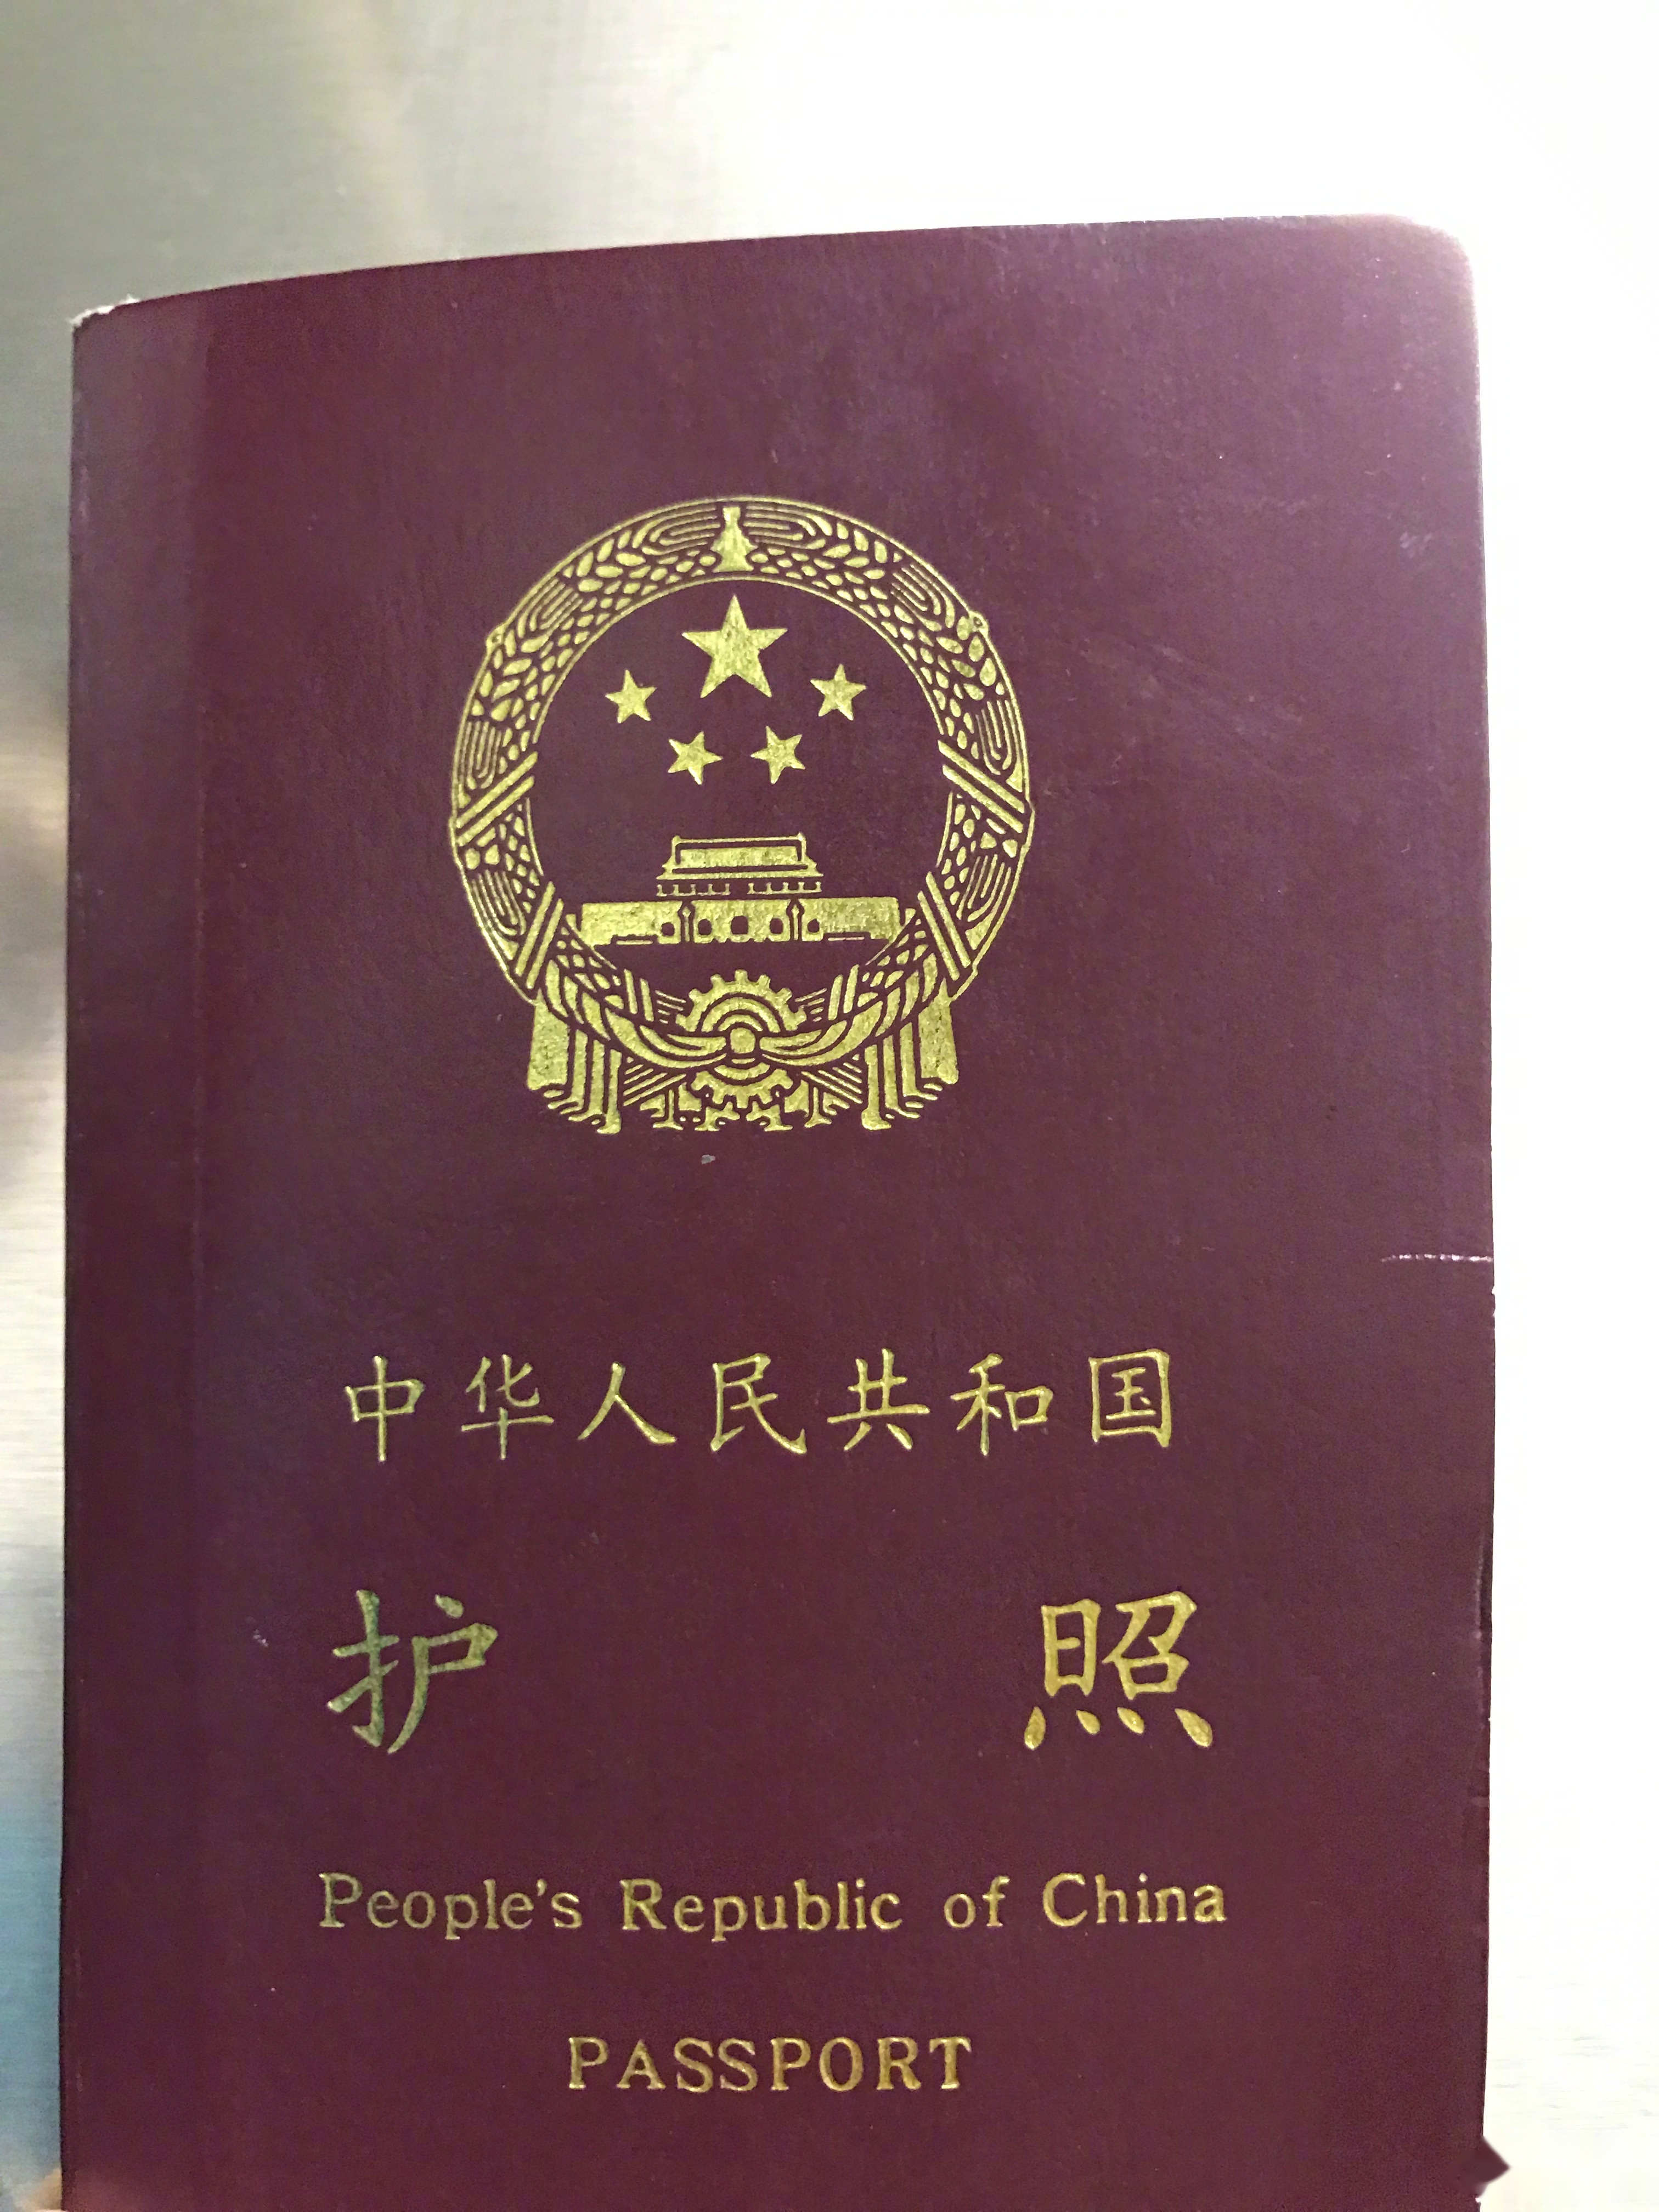 一九九三年持有中华人民共和国护照至今,没有英文名字,我要是拽起来